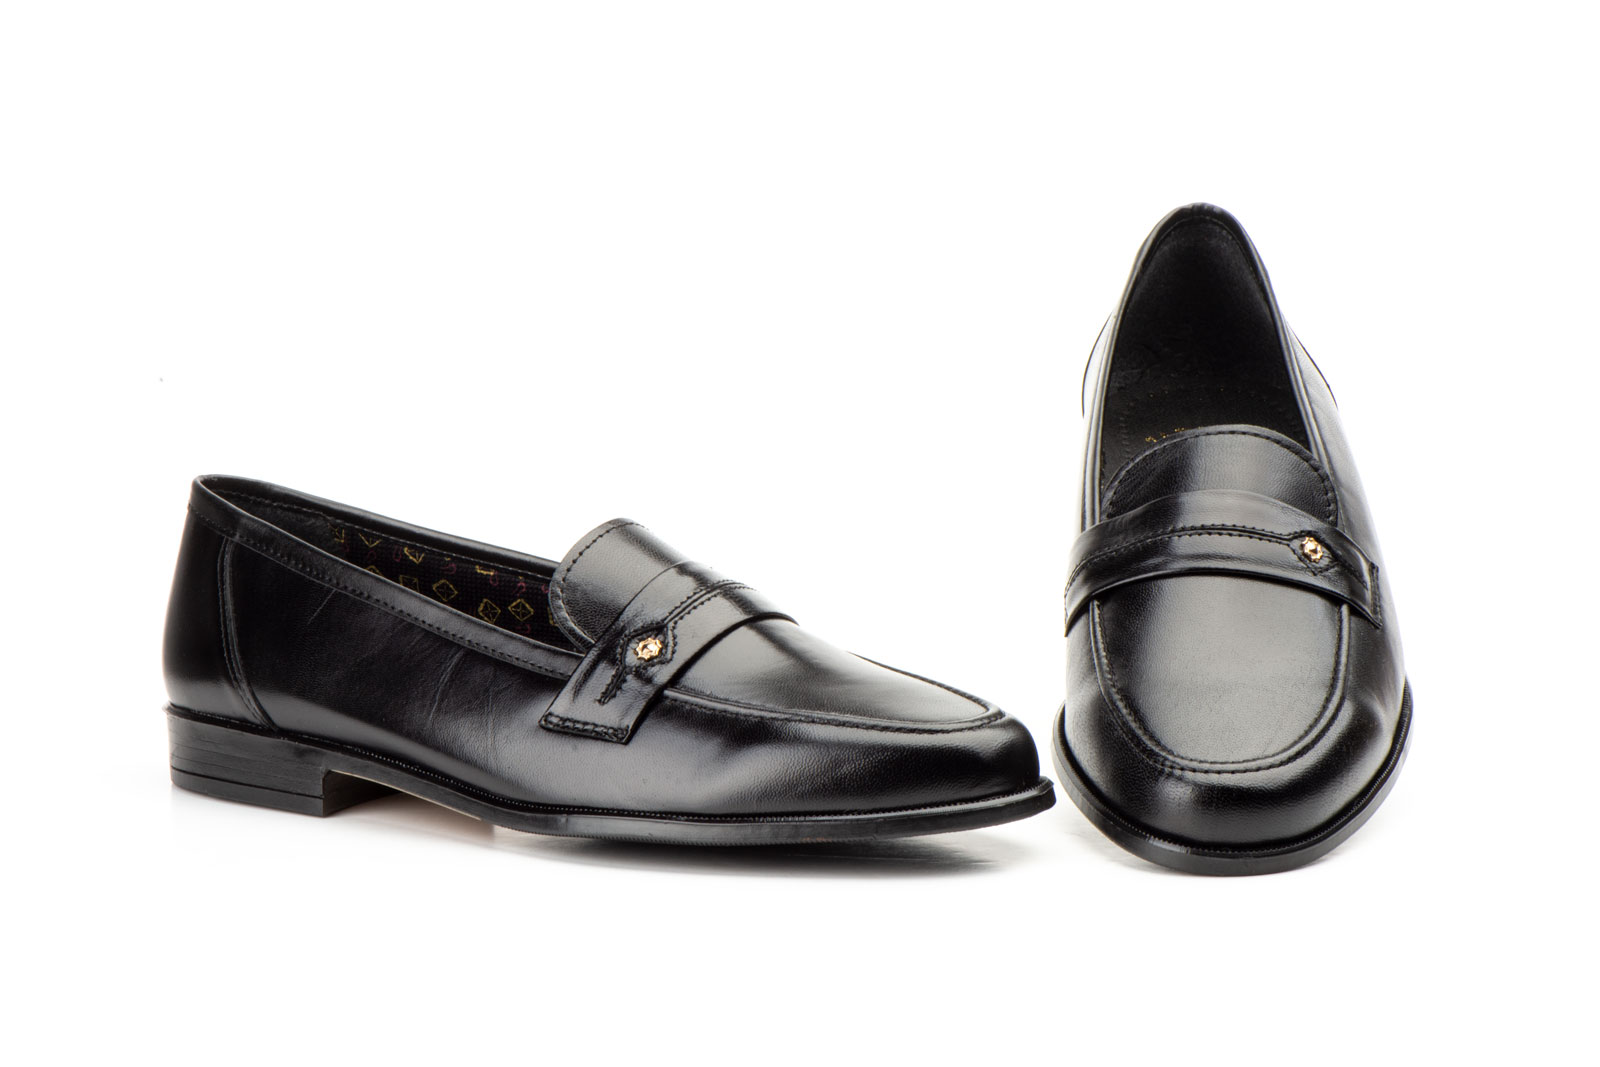 Zapatos Hombre Piel Negro  -  Ref. 115 Negro